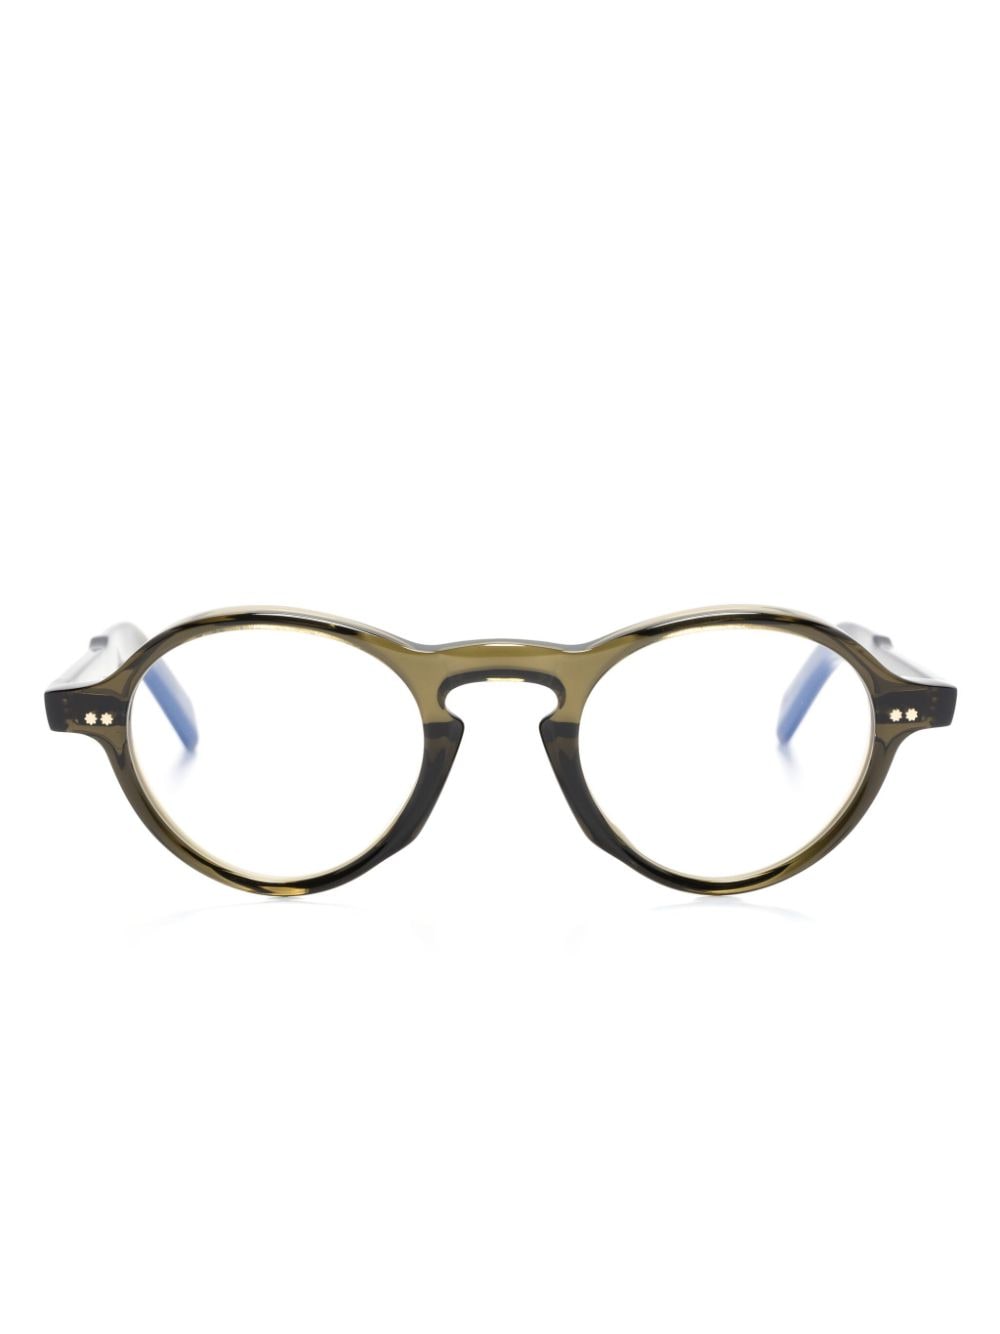 Cutler & Gross GR08 round-frame sunglasses - Green von Cutler & Gross